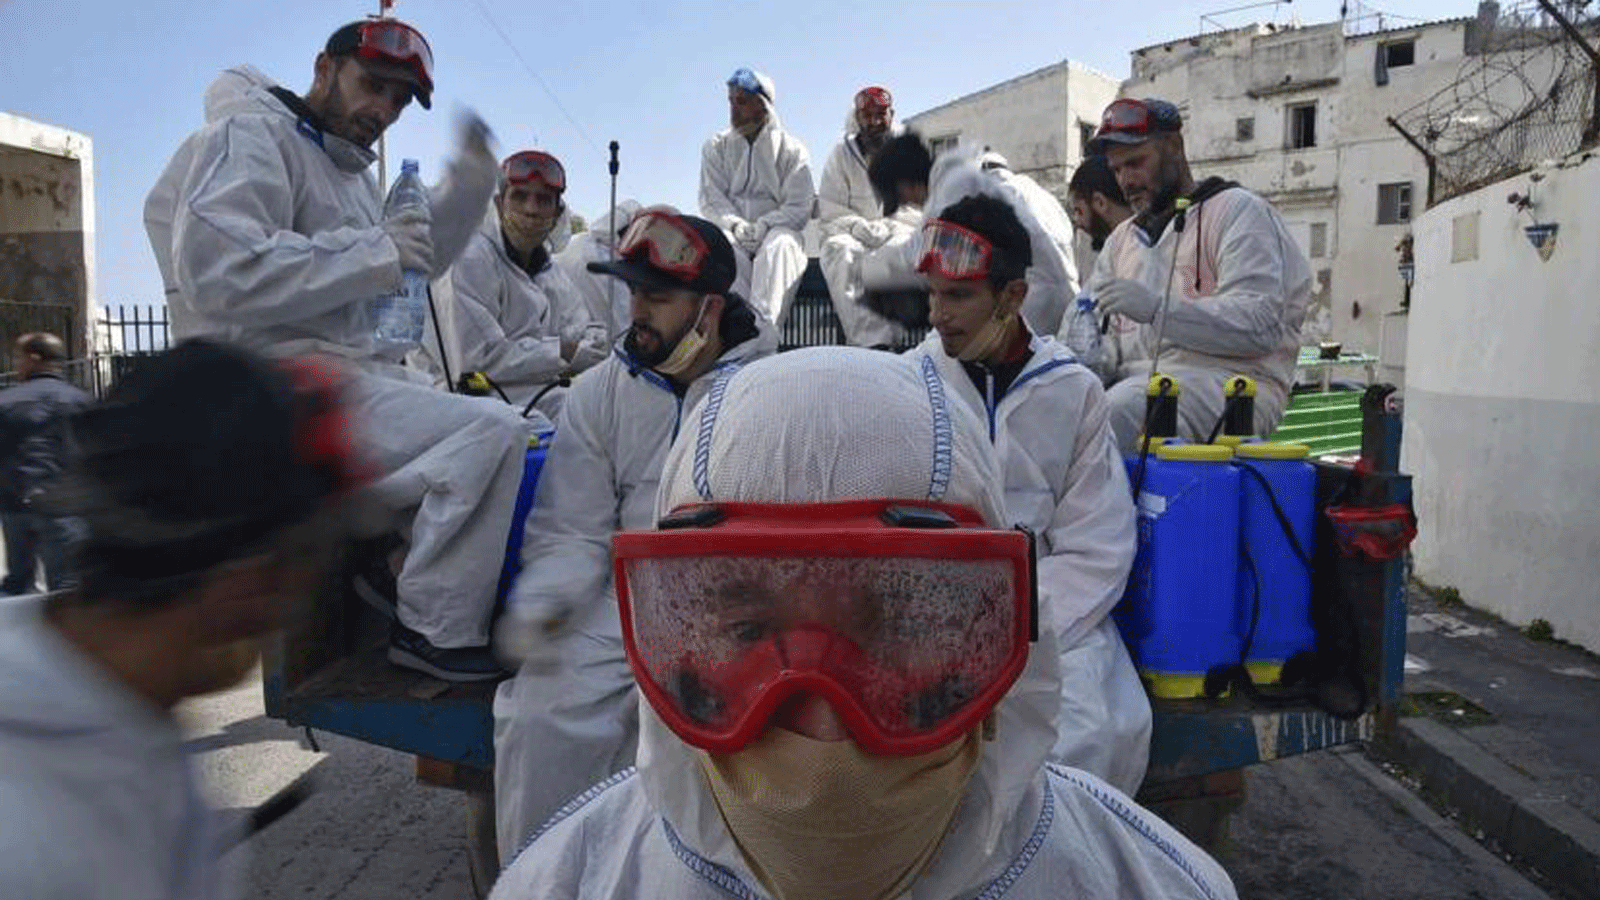 عمال البلدية يرتدون ملابس واقية يستريحون أثناء تأدية واجبهم لتطهير الشارع أثناء تفشي جائحة كوفيد -19 في منطقة باب الواد بالعاصمة الجزائرية الجزائر في 9 نيسان/أبريل 2020